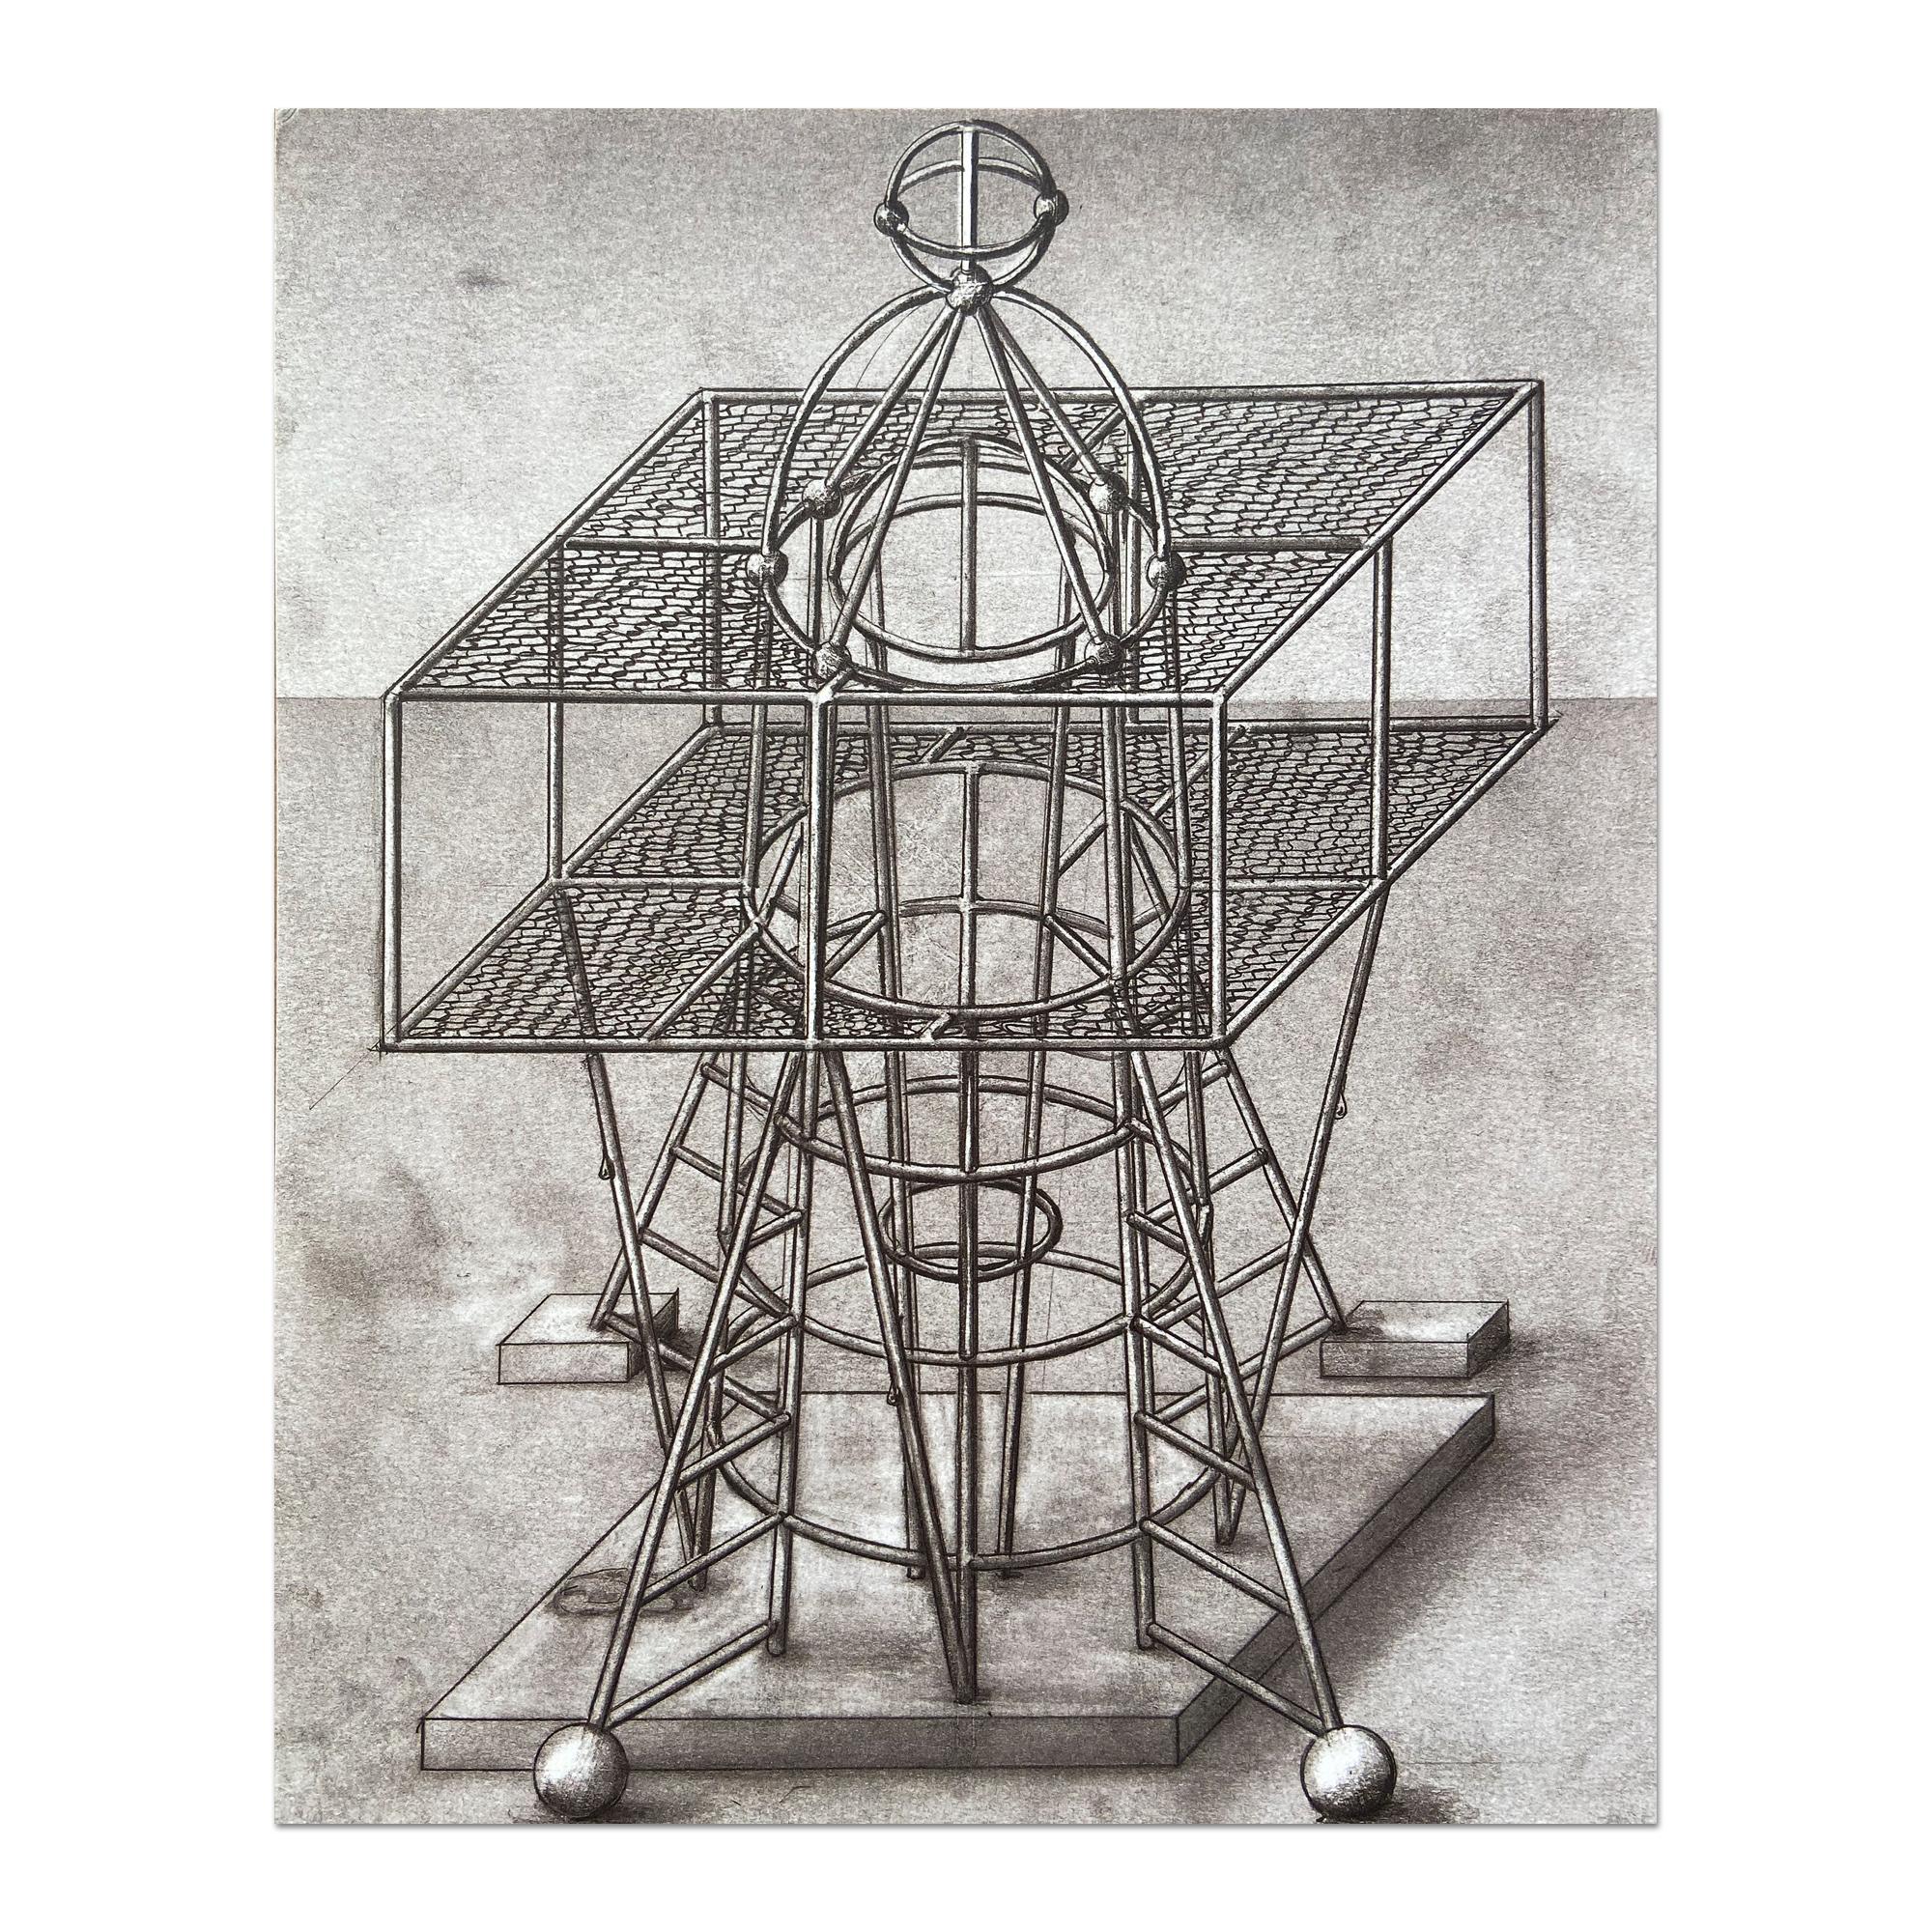 Paul Noble (britannique, né en 1963)
Playframe, 2000
Support : Lithographie offset sur papier
DImensions : 26 × 21 cm (10 1/5 × 8 3/10 in)
Edition de 100 : Signé et numéroté à la main
Condit : Excellent